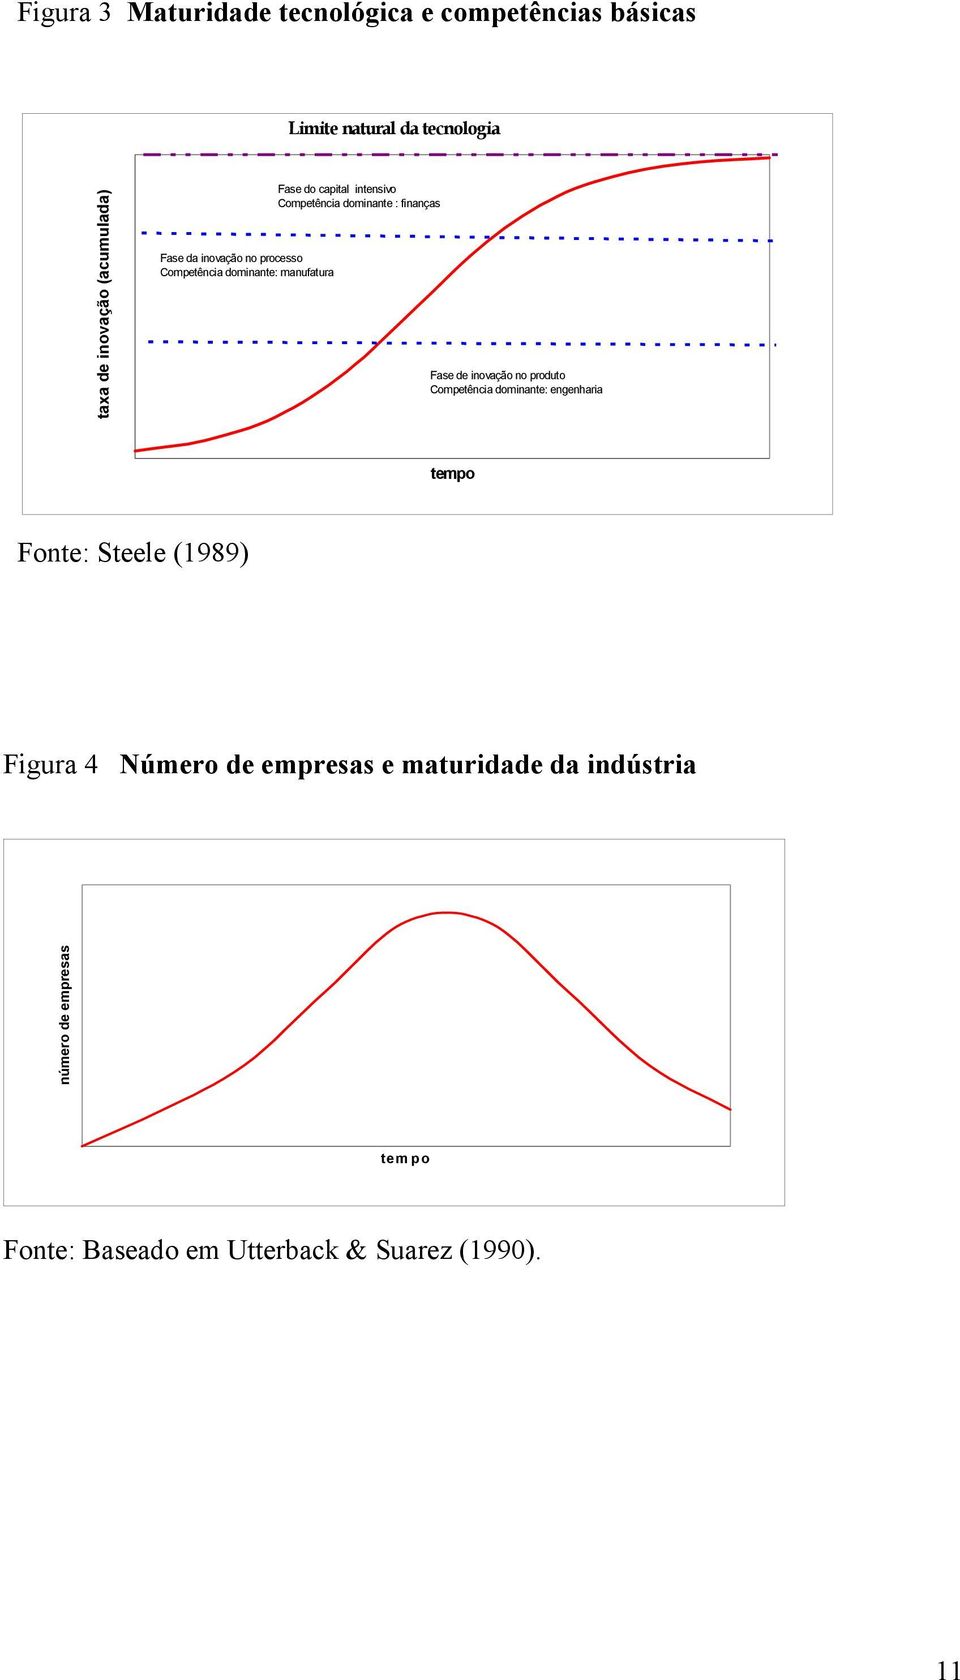 finanças Fase de inovação no produto Competência dominante: engenharia tempo Fonte: Steele (1989) Figura 4